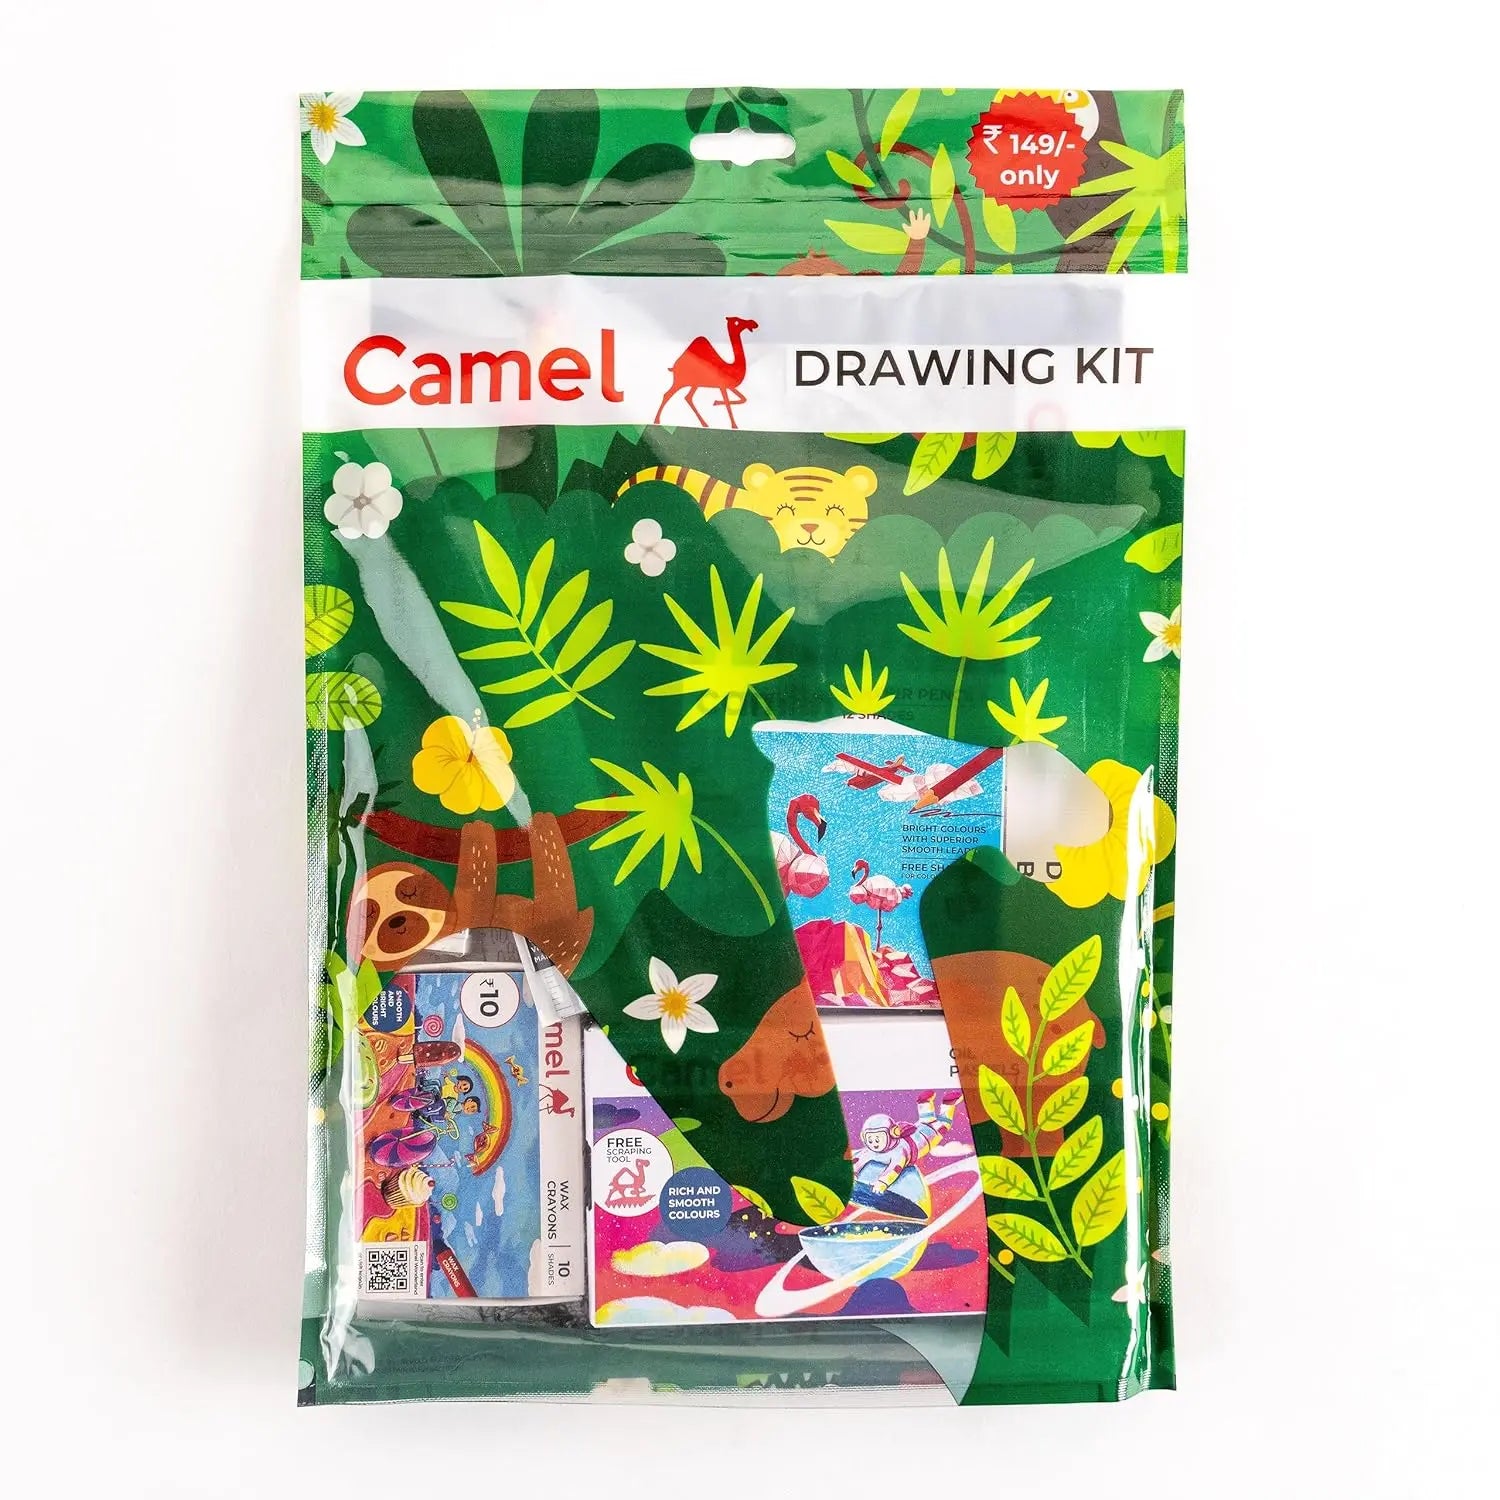 Camel Camlin Drawing Kit Set Camel